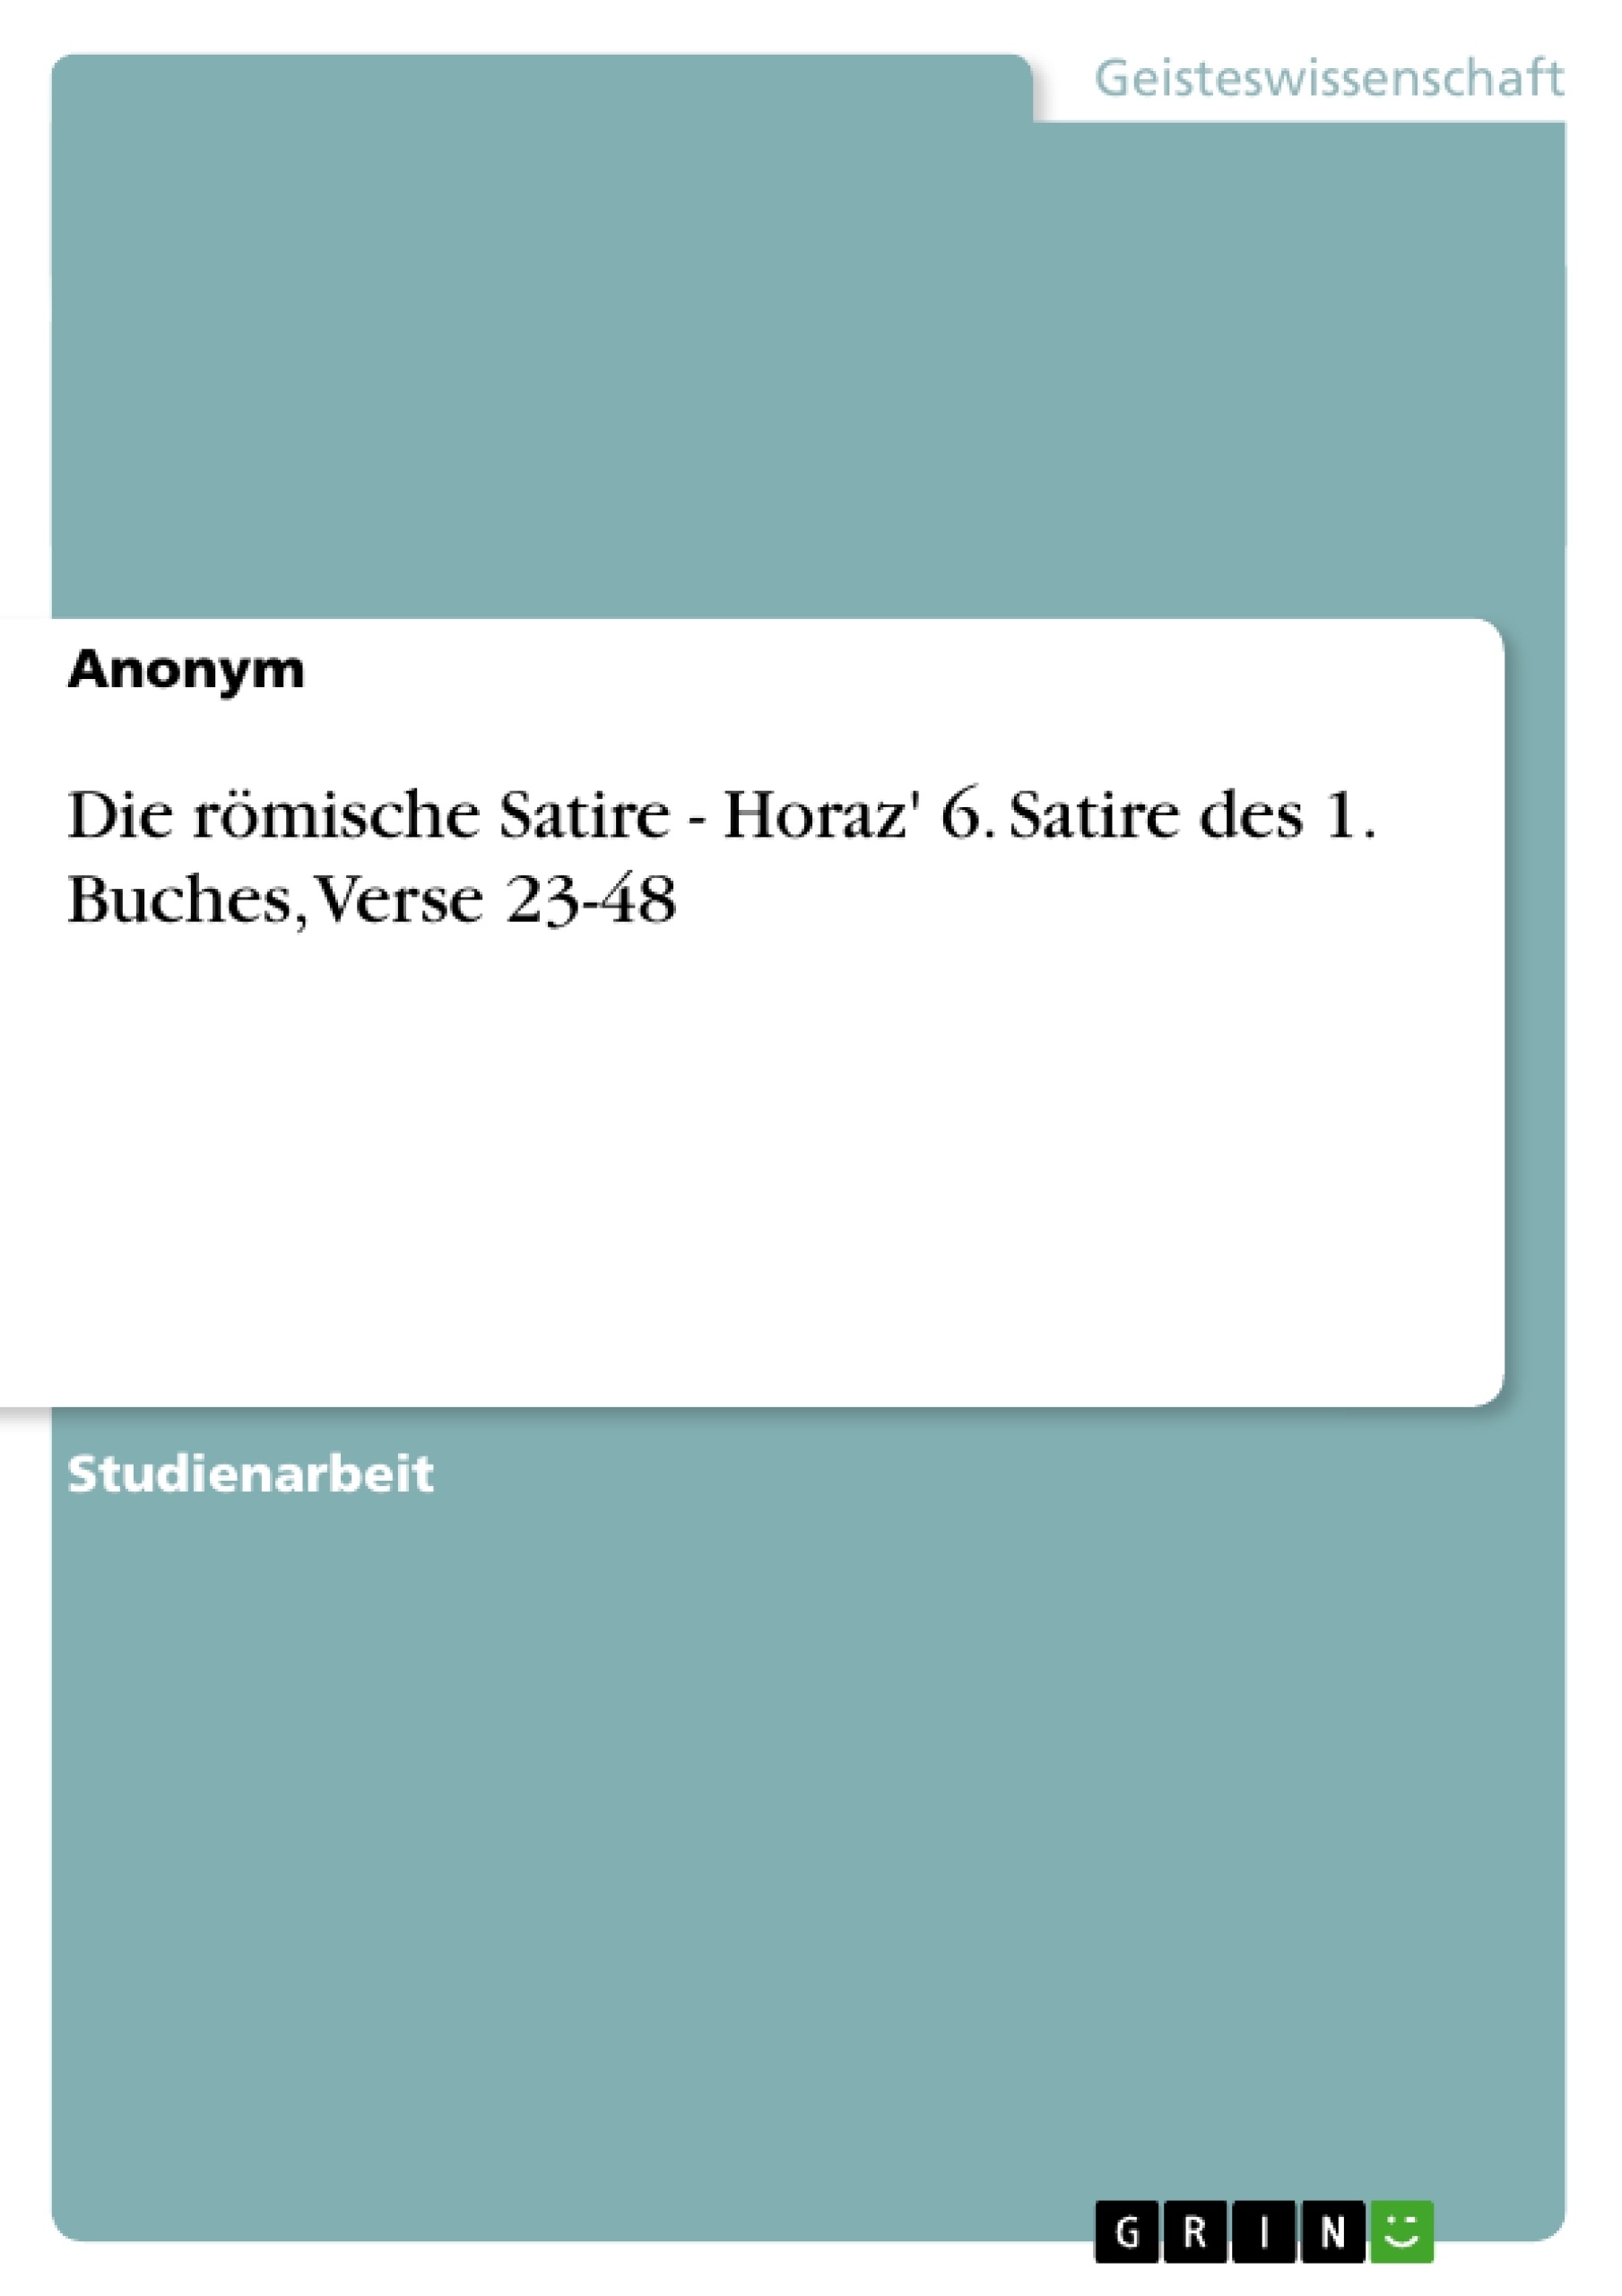 Title: Die römische Satire - Horaz' 6. Satire des 1. Buches,  Verse 23-48